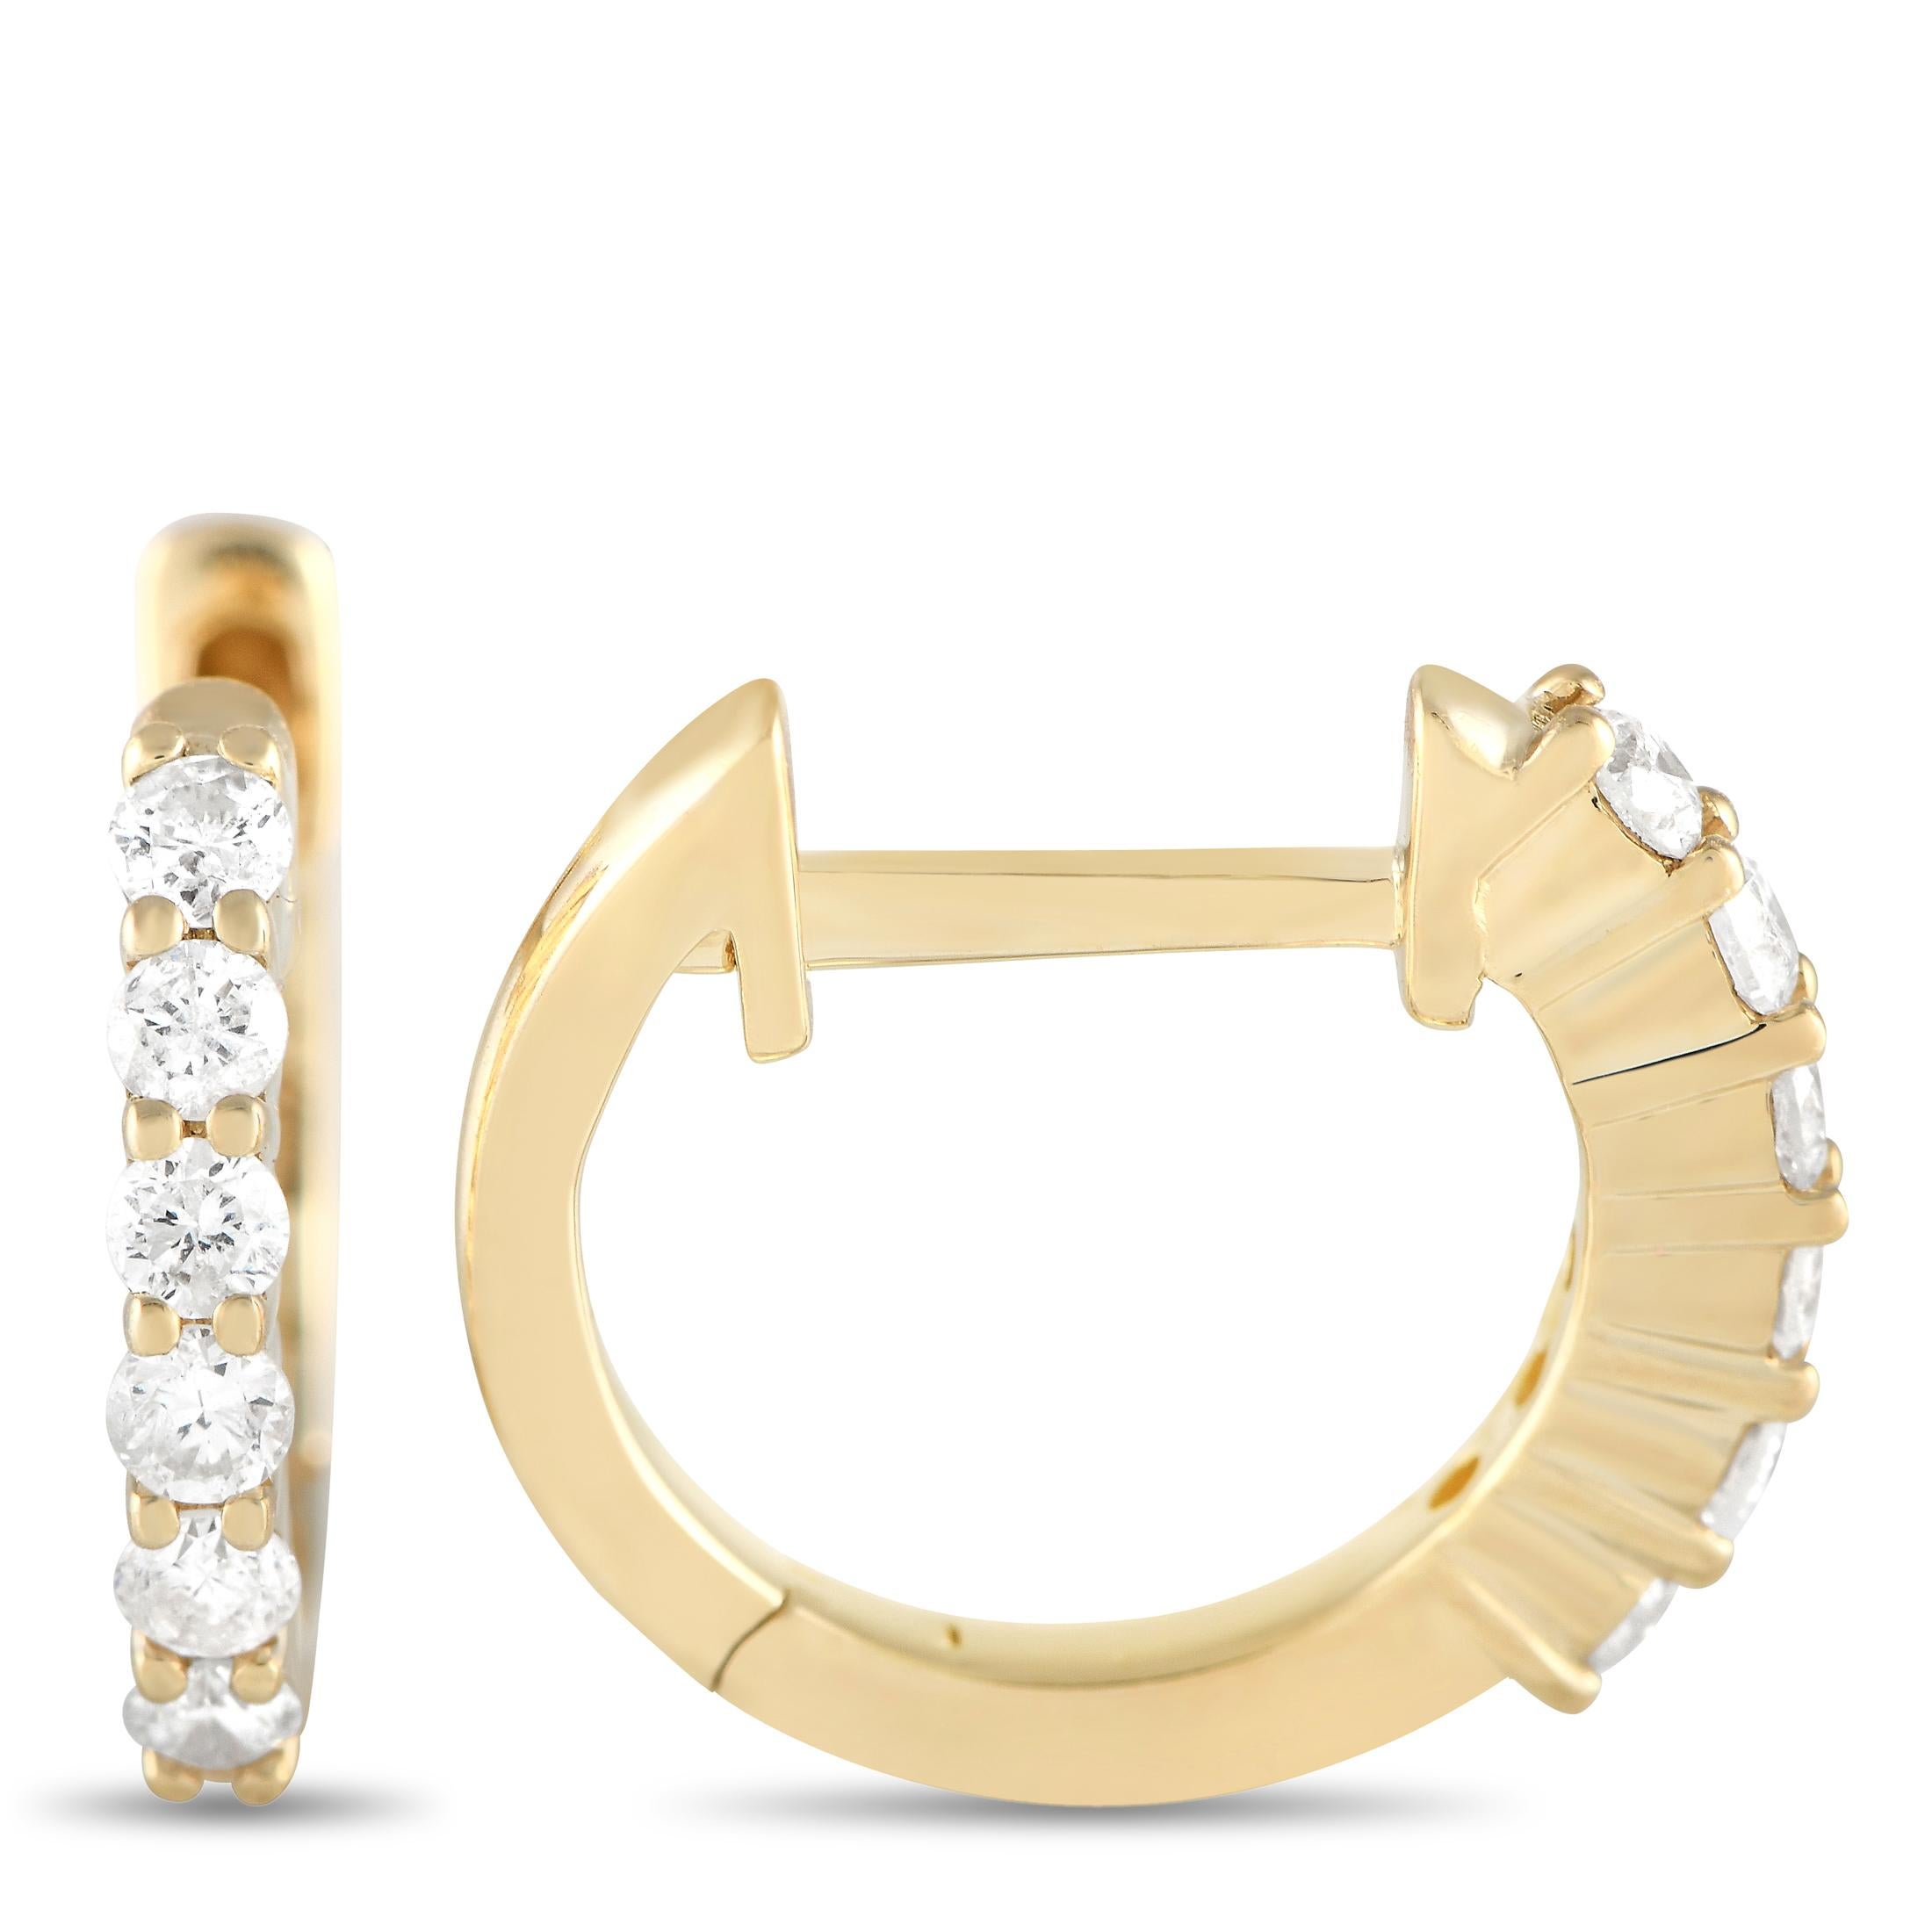 Funkelnde Diamanten im Rundschliff mit insgesamt 0,25 Karat machen diese eleganten Creolen zur perfekten Ergänzung für jedes Outfit. Schlicht, elegant und unglaublich schick ist jedes Exemplar mit einer klassischen Fassung aus 14-karätigem Gelbgold